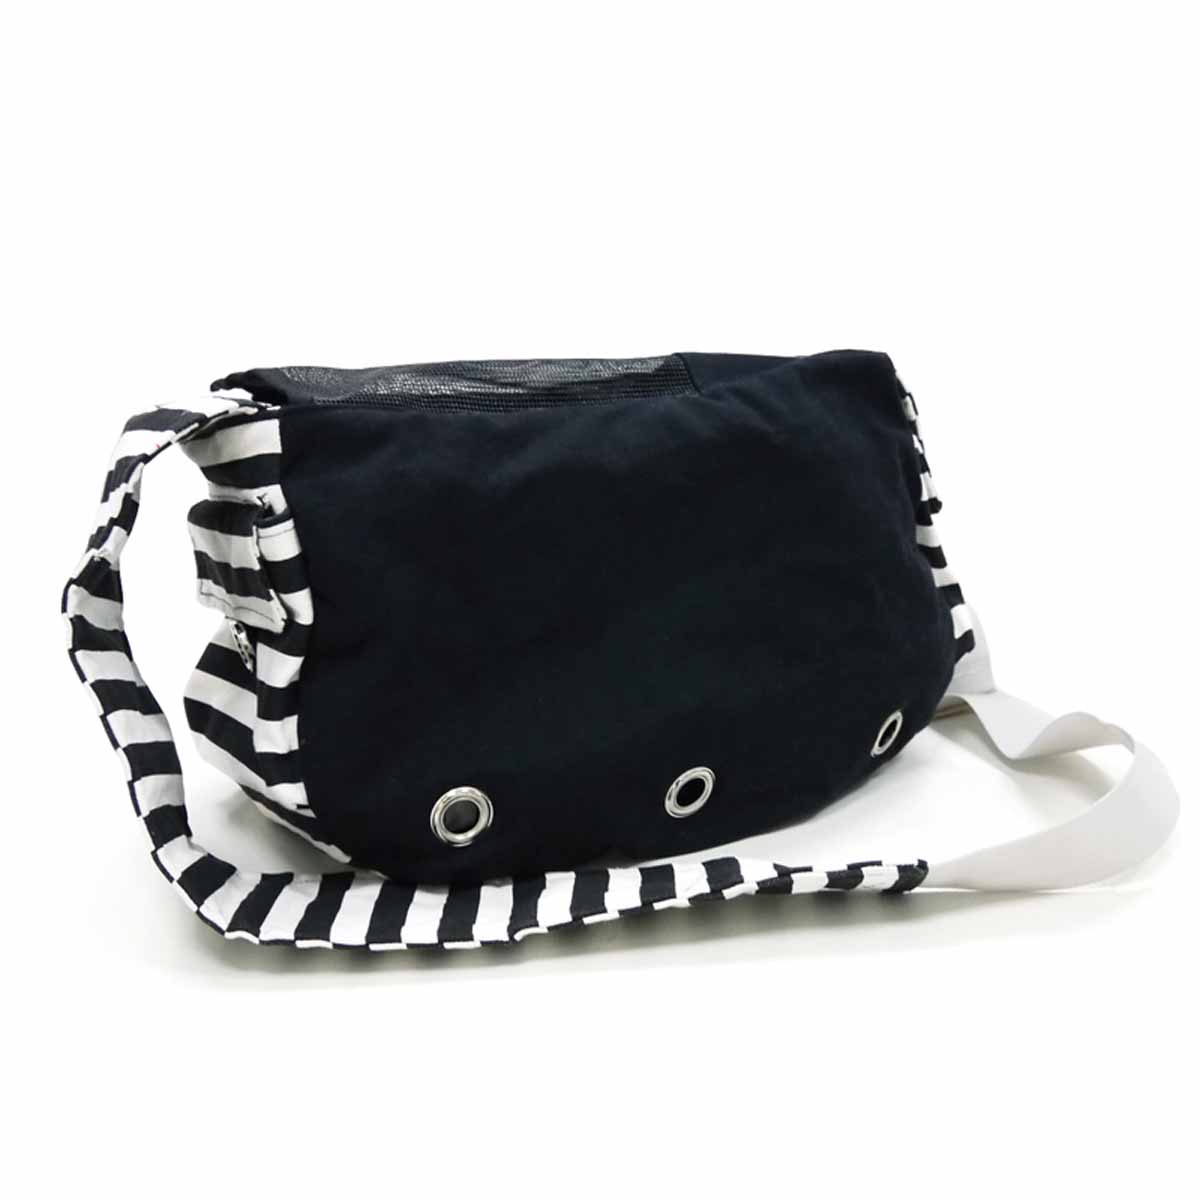 Soft Sling Bag Dog Carrier by Dogo - Black